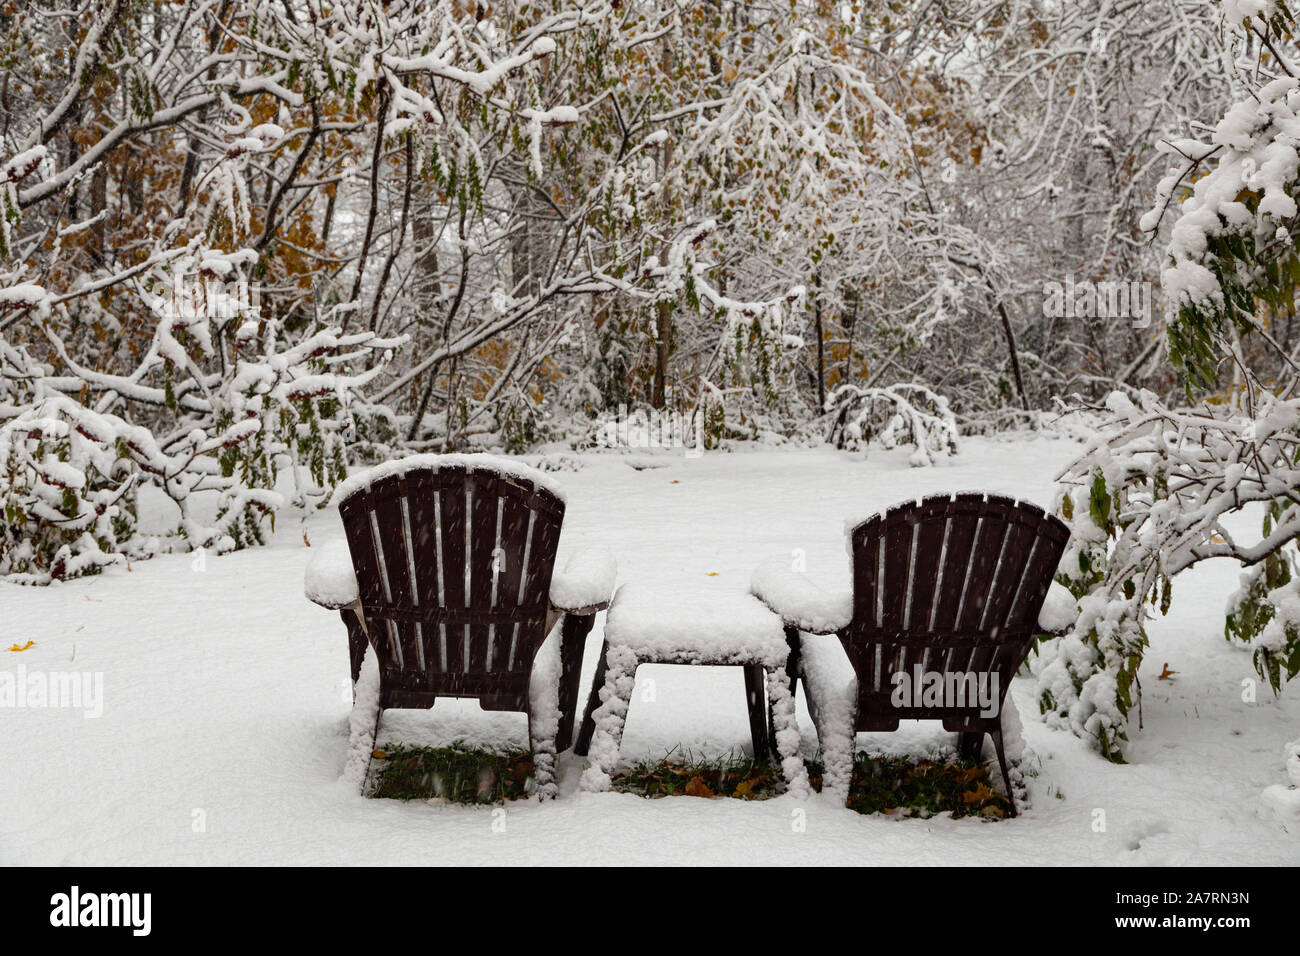 Deux chaises marron et une table couverte de neige duveteux léger suite à une chute de neige, l'automne, dans une clairière dans les bois. Banque D'Images